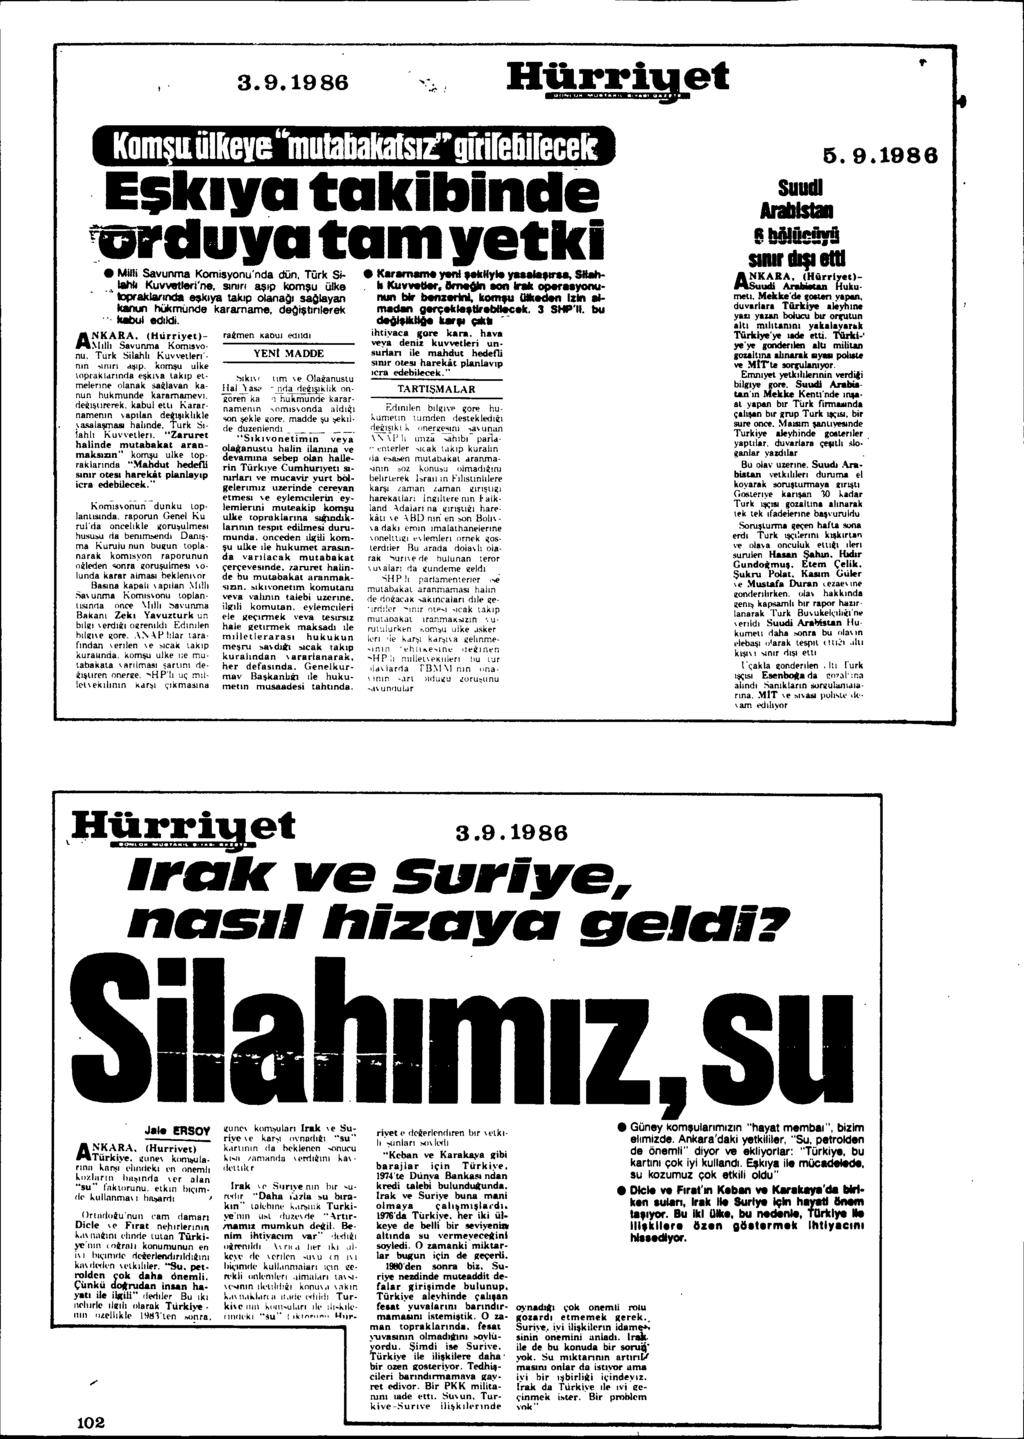 3.9.1986 Esklvatakibinde _duvatamvetki Milli Savunma Komisyonu'nda dün, Türk SilahII KUV\lelIeri'ne. slom 8\llp kom\lu ülke,,' lcpraklamldll llfklya taklp oiana!)1 s80layan lclinun hükmunde karamame.